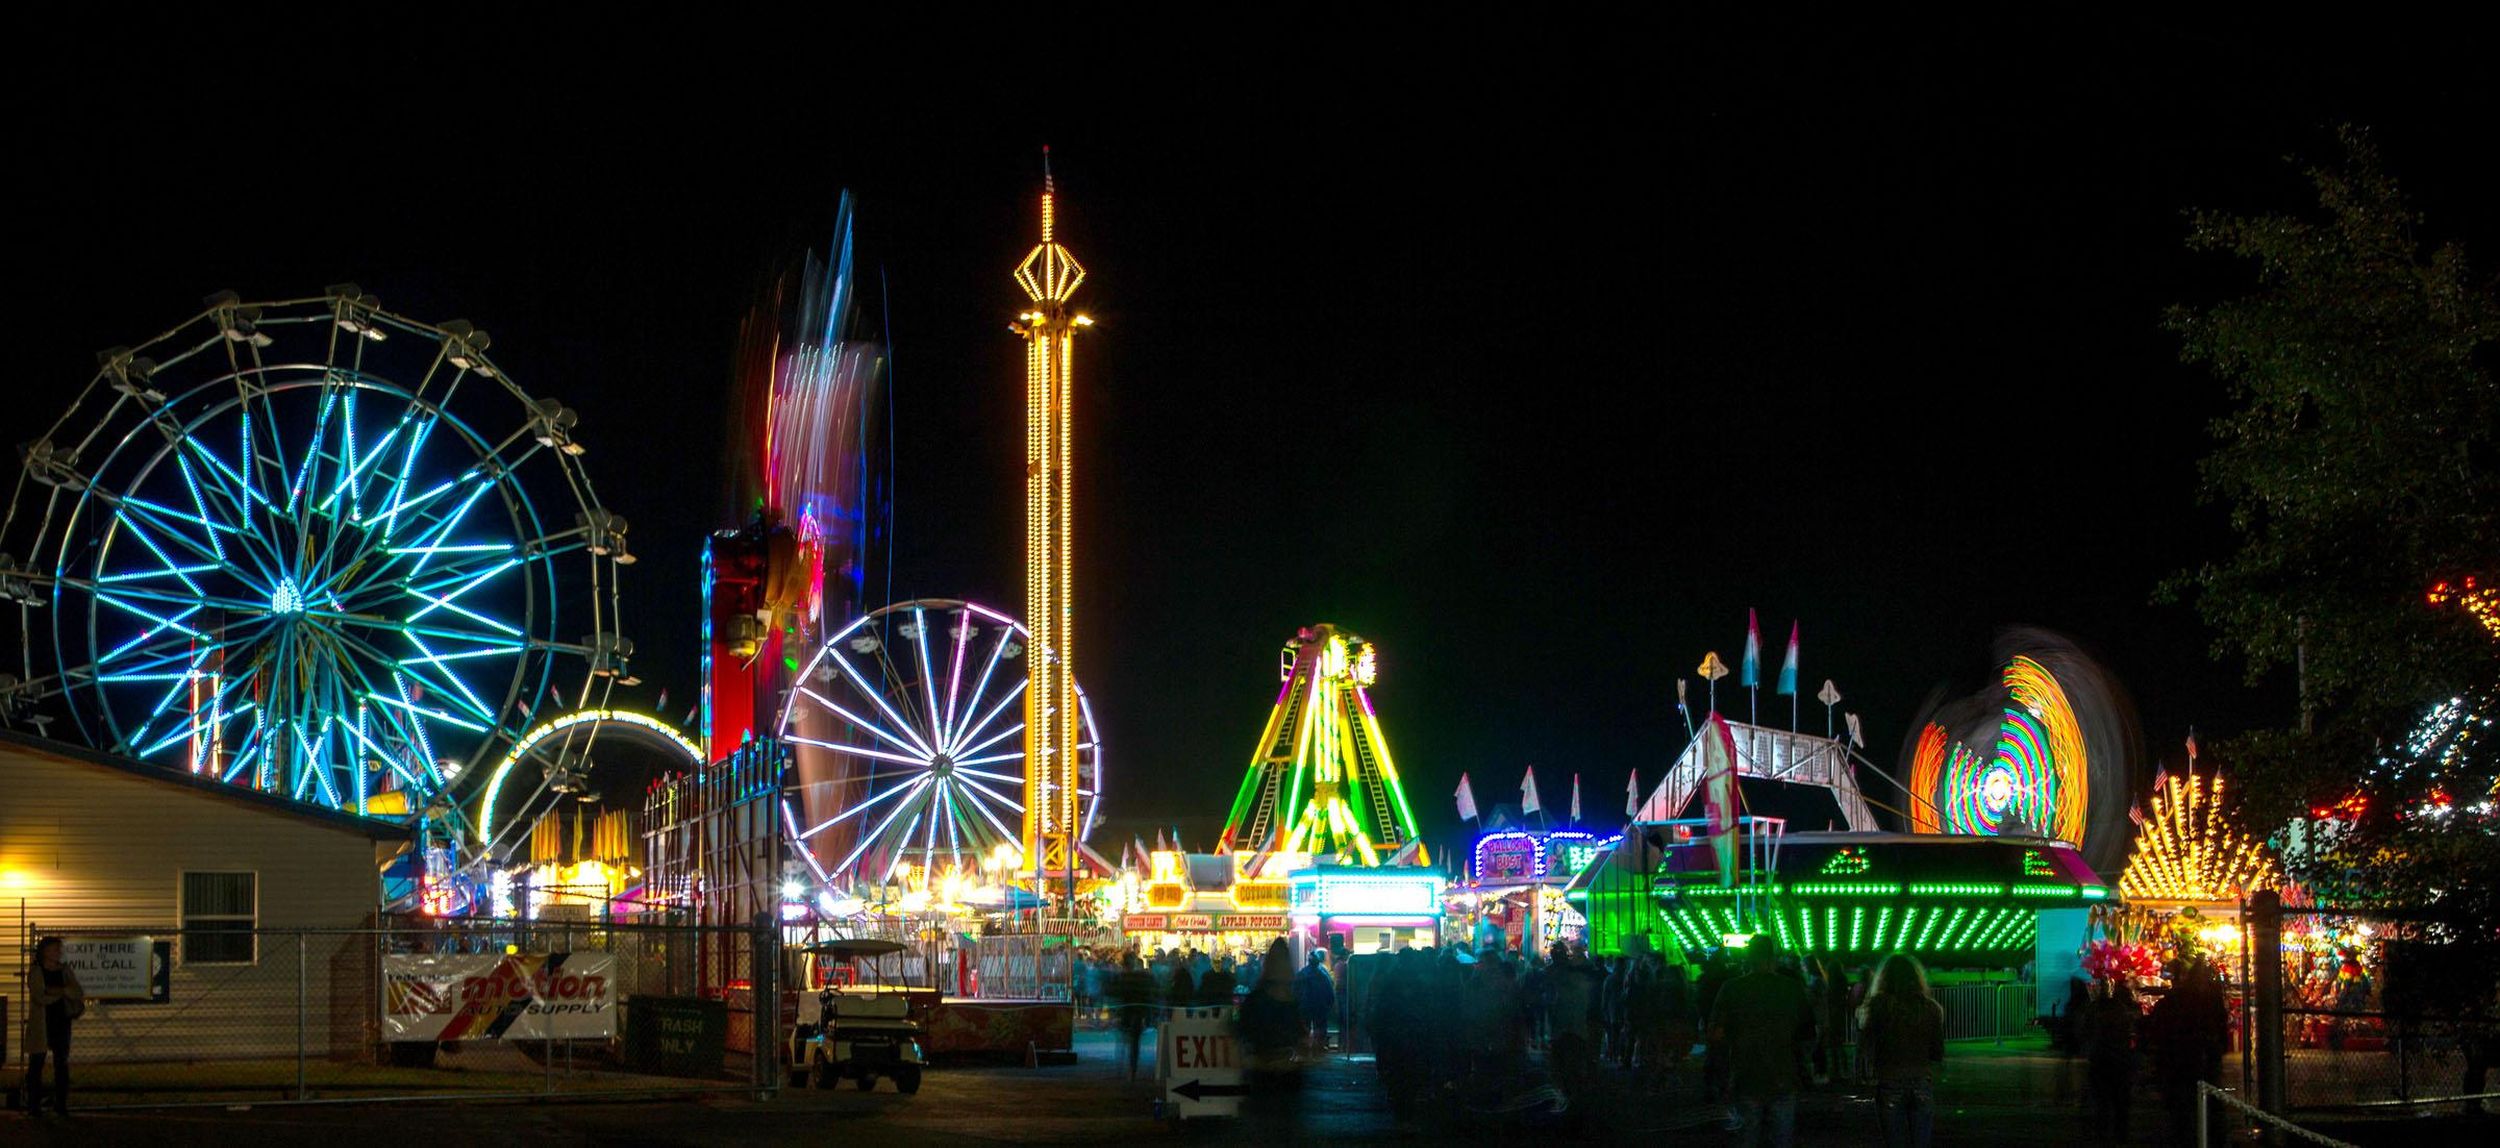 Spokane County Fair & Expo Center Director Rich Hartzell retires